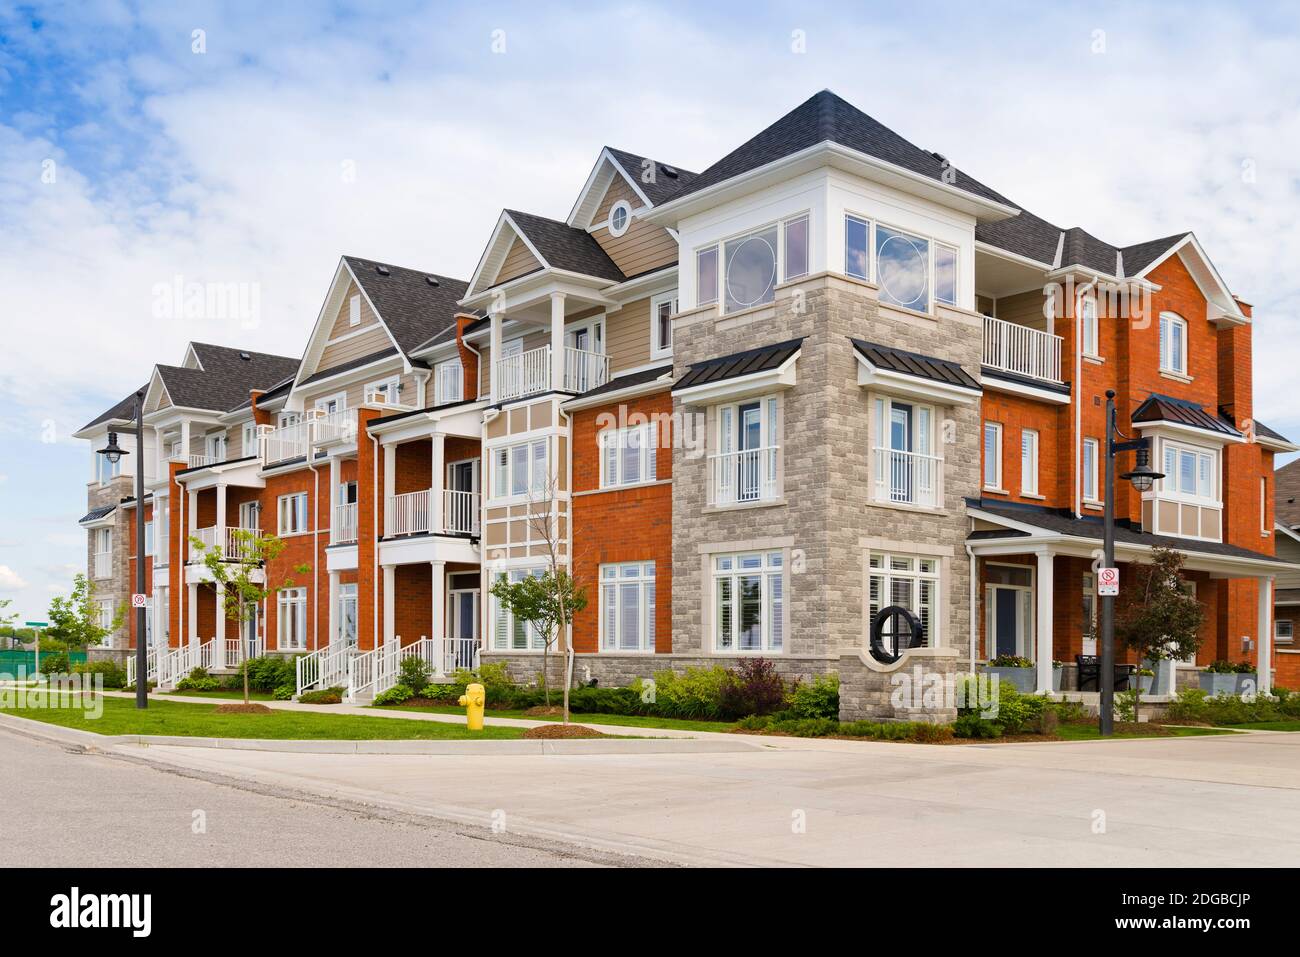 Facade of an apartment, Collingwood, Simcoe County, Ontario, Canada Stock Photo